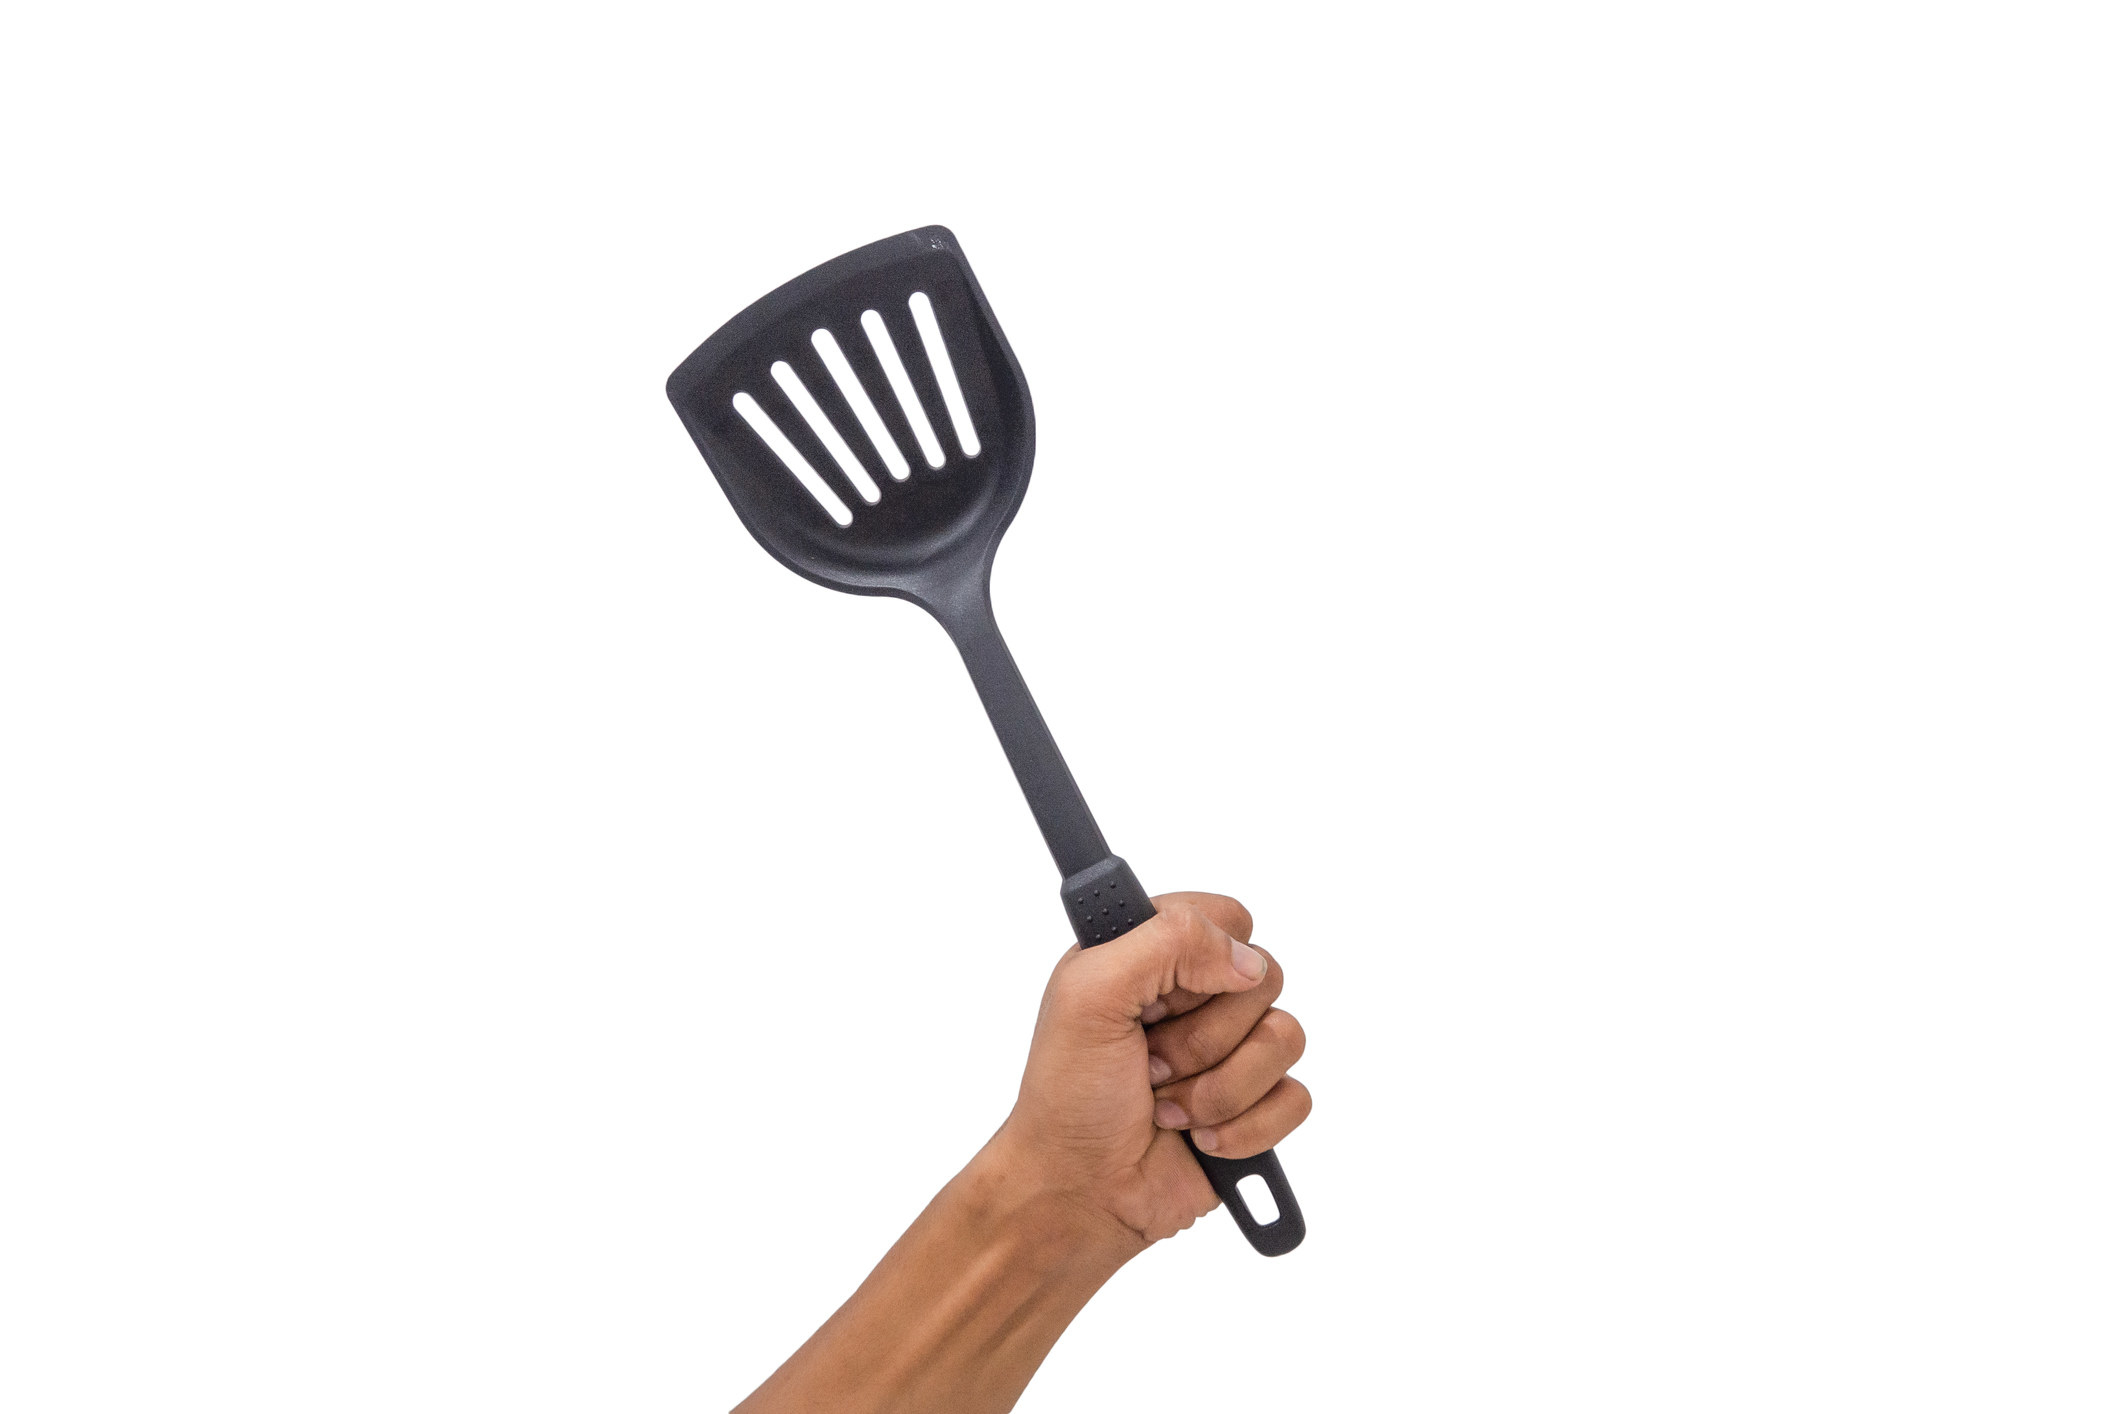 A hand holds a spatula